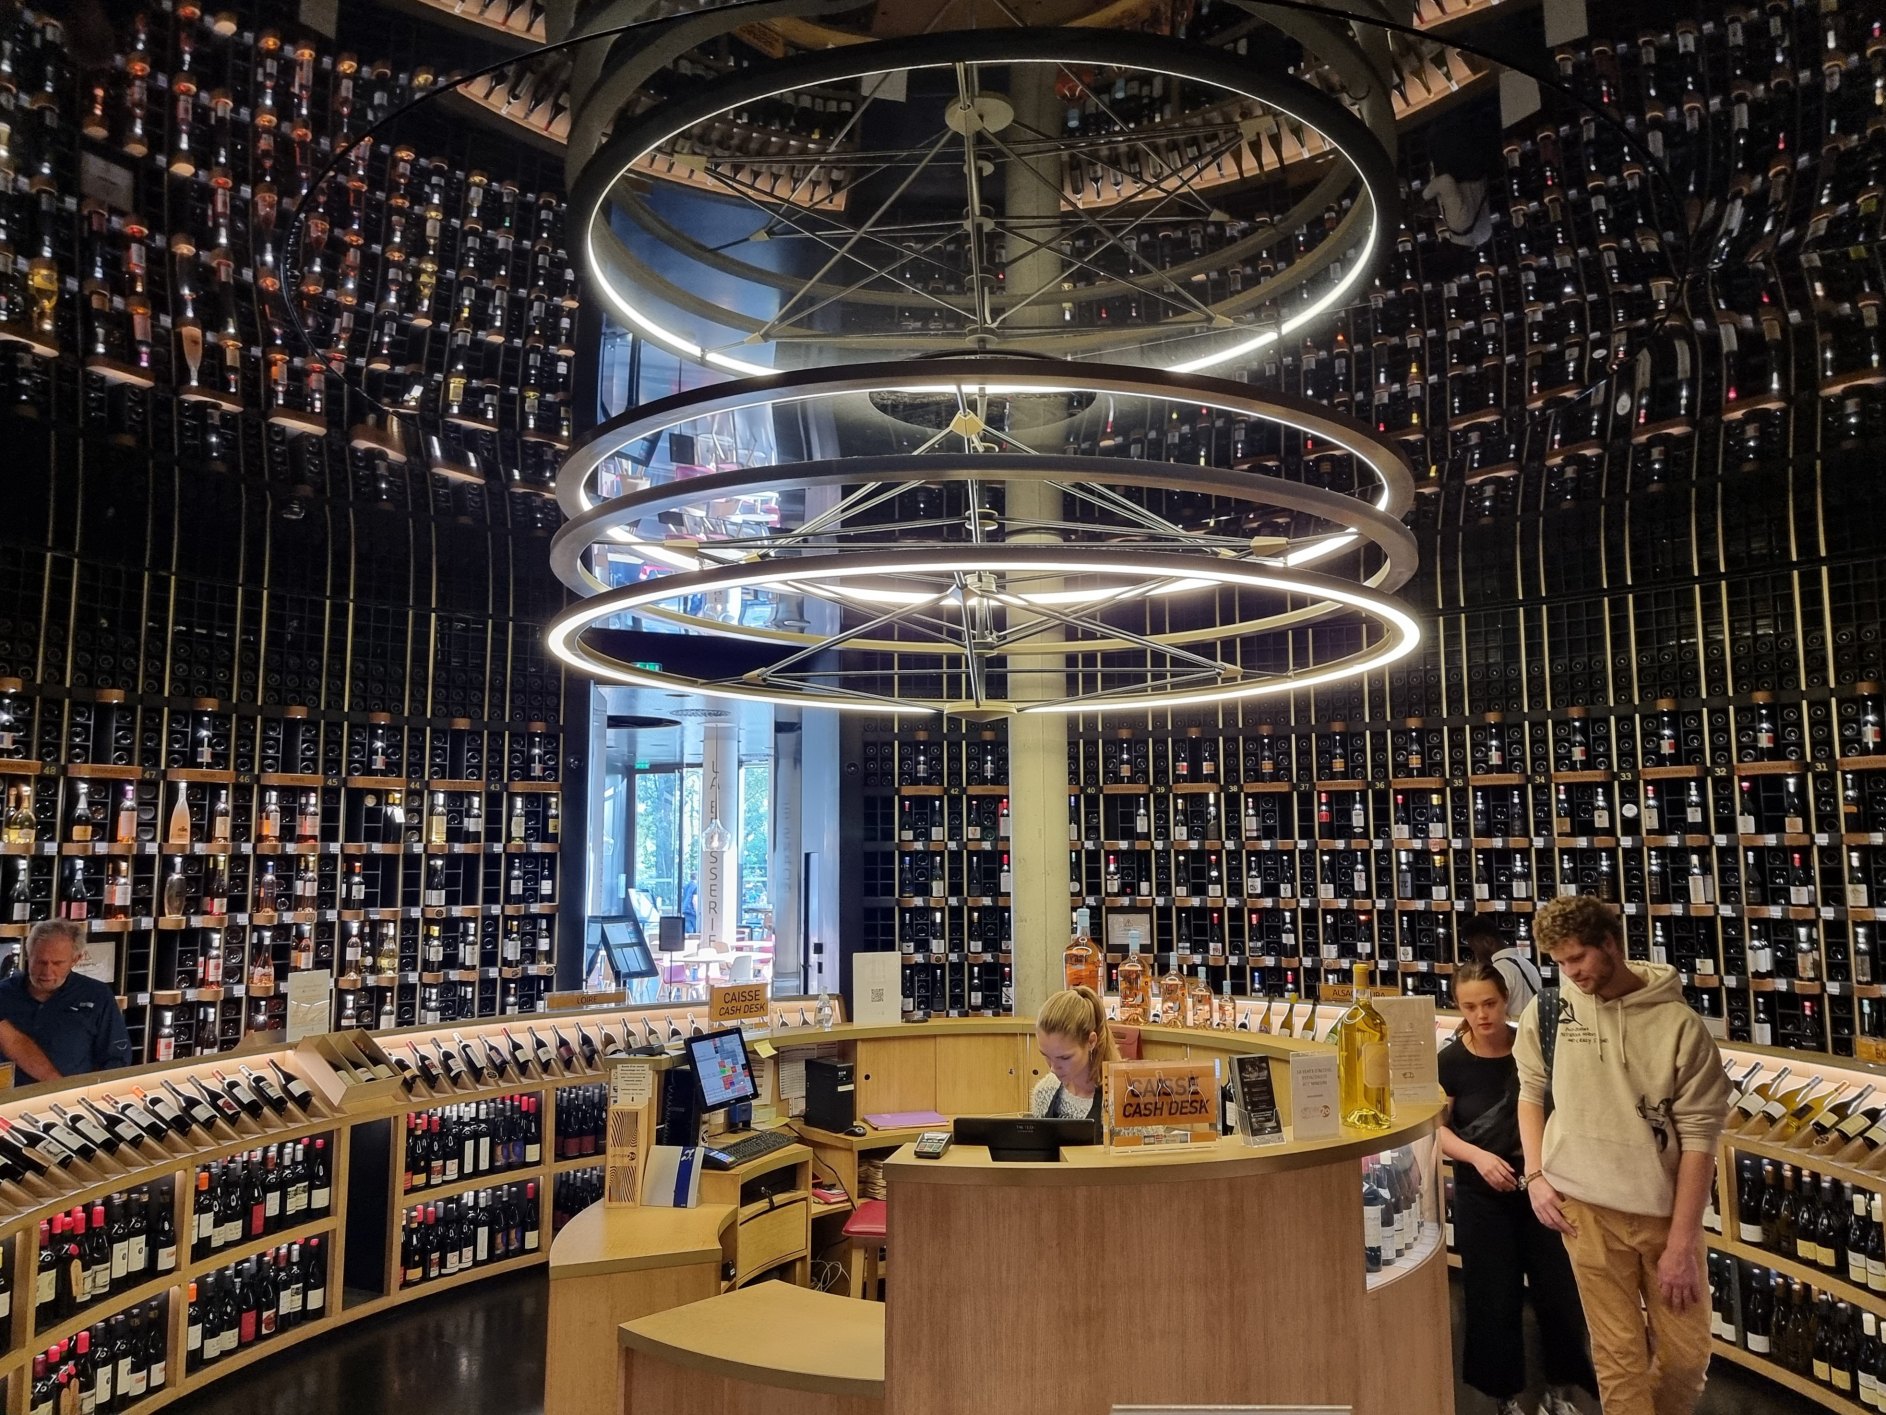 La Cité du Vin wine shop